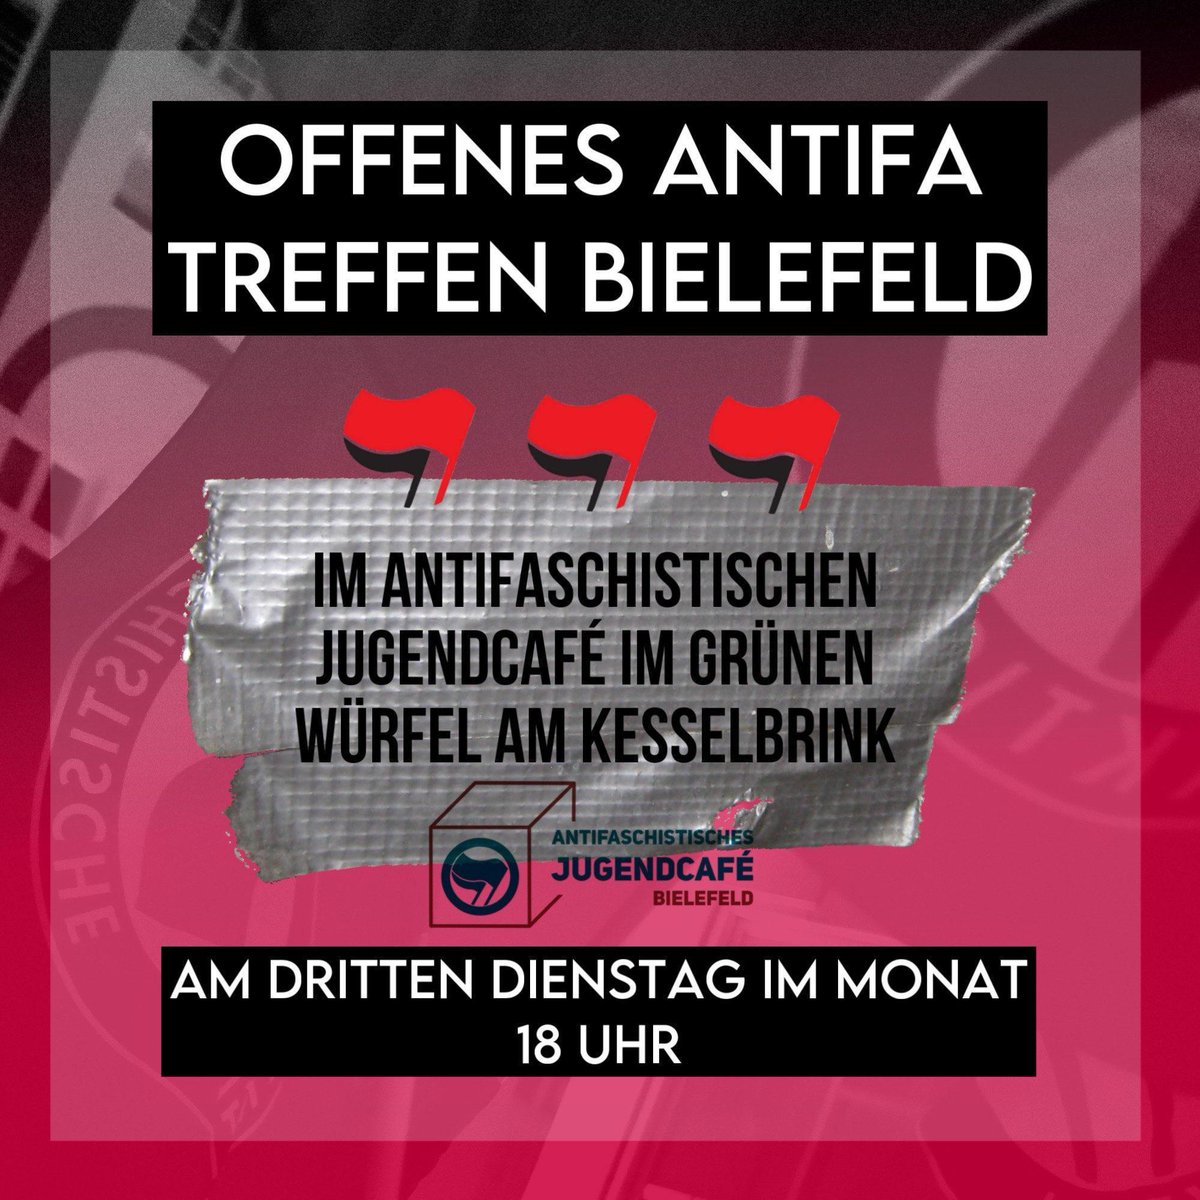 Das antifaschistische Jugendcafé in #Bielefeld hat sich neu aufgestellt. Jeden dritten Dienstag im Monat ist jetzt Offenes Antifa Treffen. Beim ersten OAT am 19.3. werden wir auch vor Ort sein und mit euch darüber diskutieren wie wir konkret weiter gegen die AfD kämpfen. #noafd